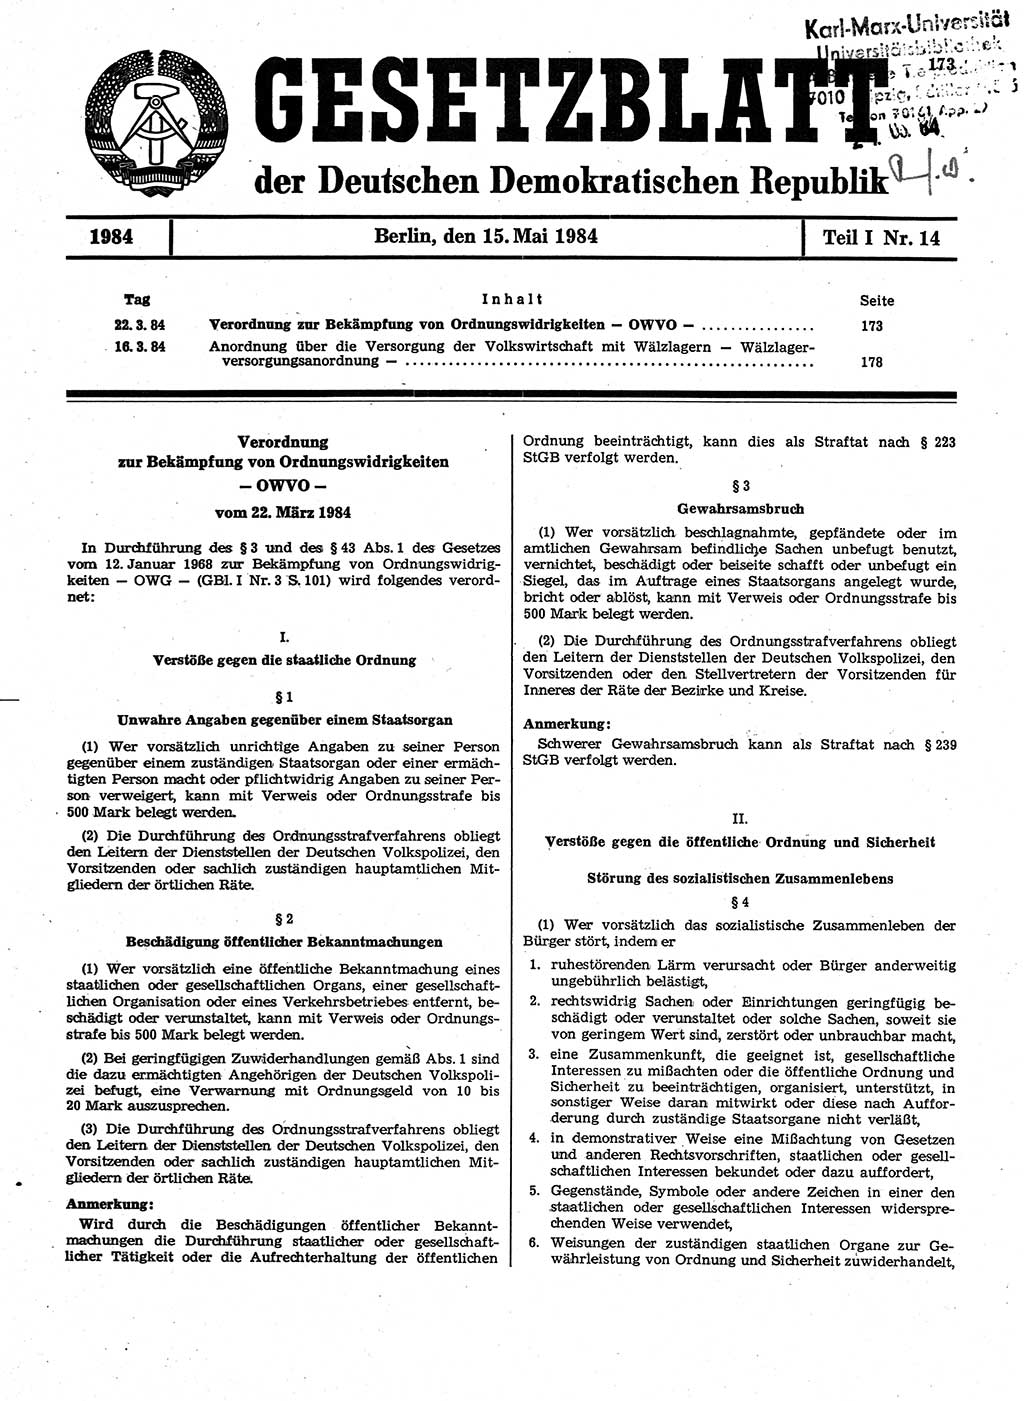 Gesetzblatt (GBl.) der Deutschen Demokratischen Republik (DDR) Teil Ⅰ 1984, Seite 173 (GBl. DDR Ⅰ 1984, S. 173)